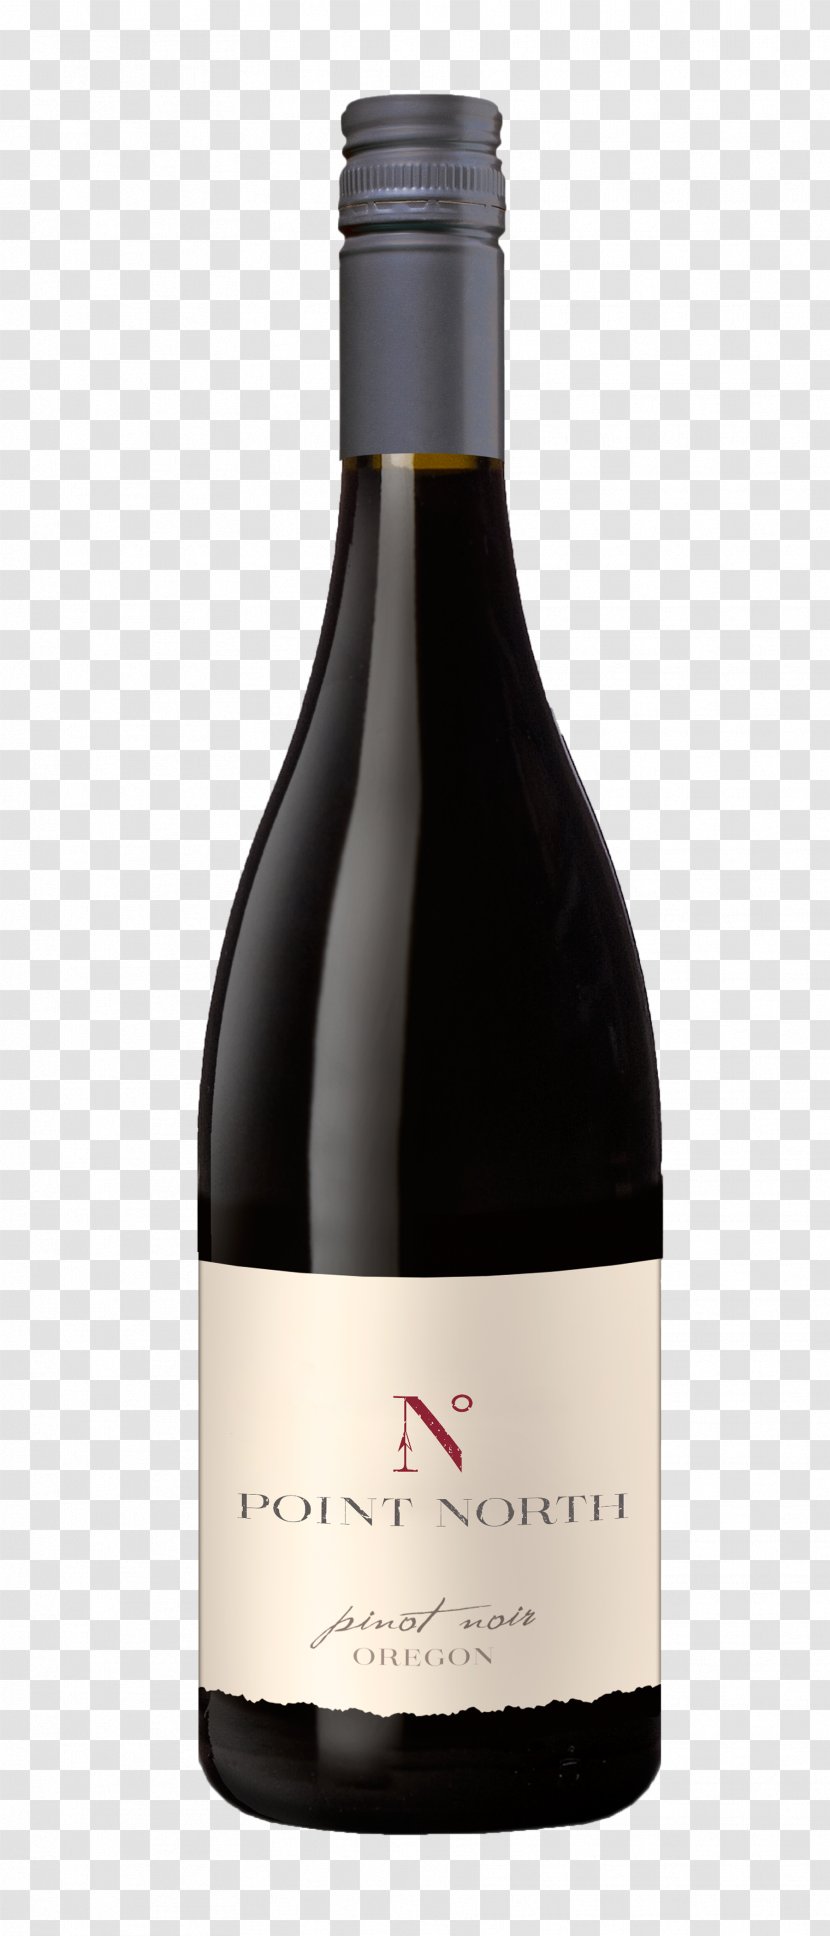 Wine Pinot Noir Shiraz Viognier Sonoma Coast AVA - Condrieu Aoc Transparent PNG